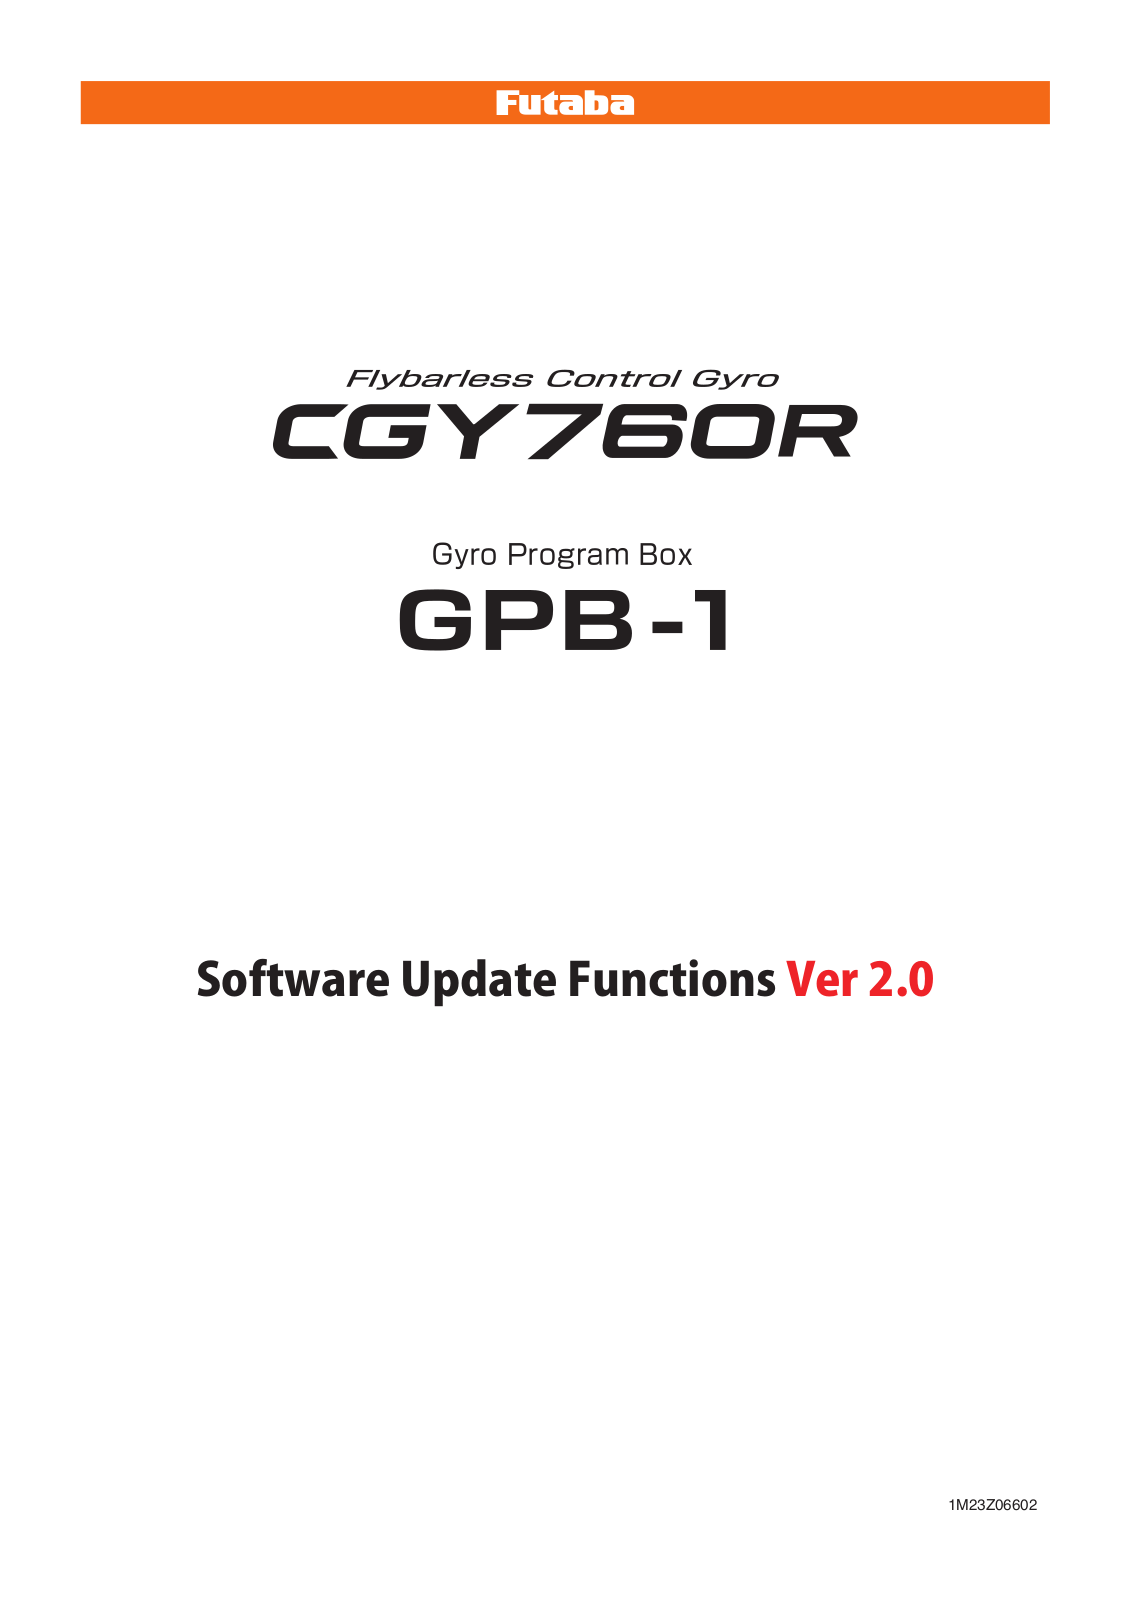 Futaba GPB-1, CGY760R User Manual